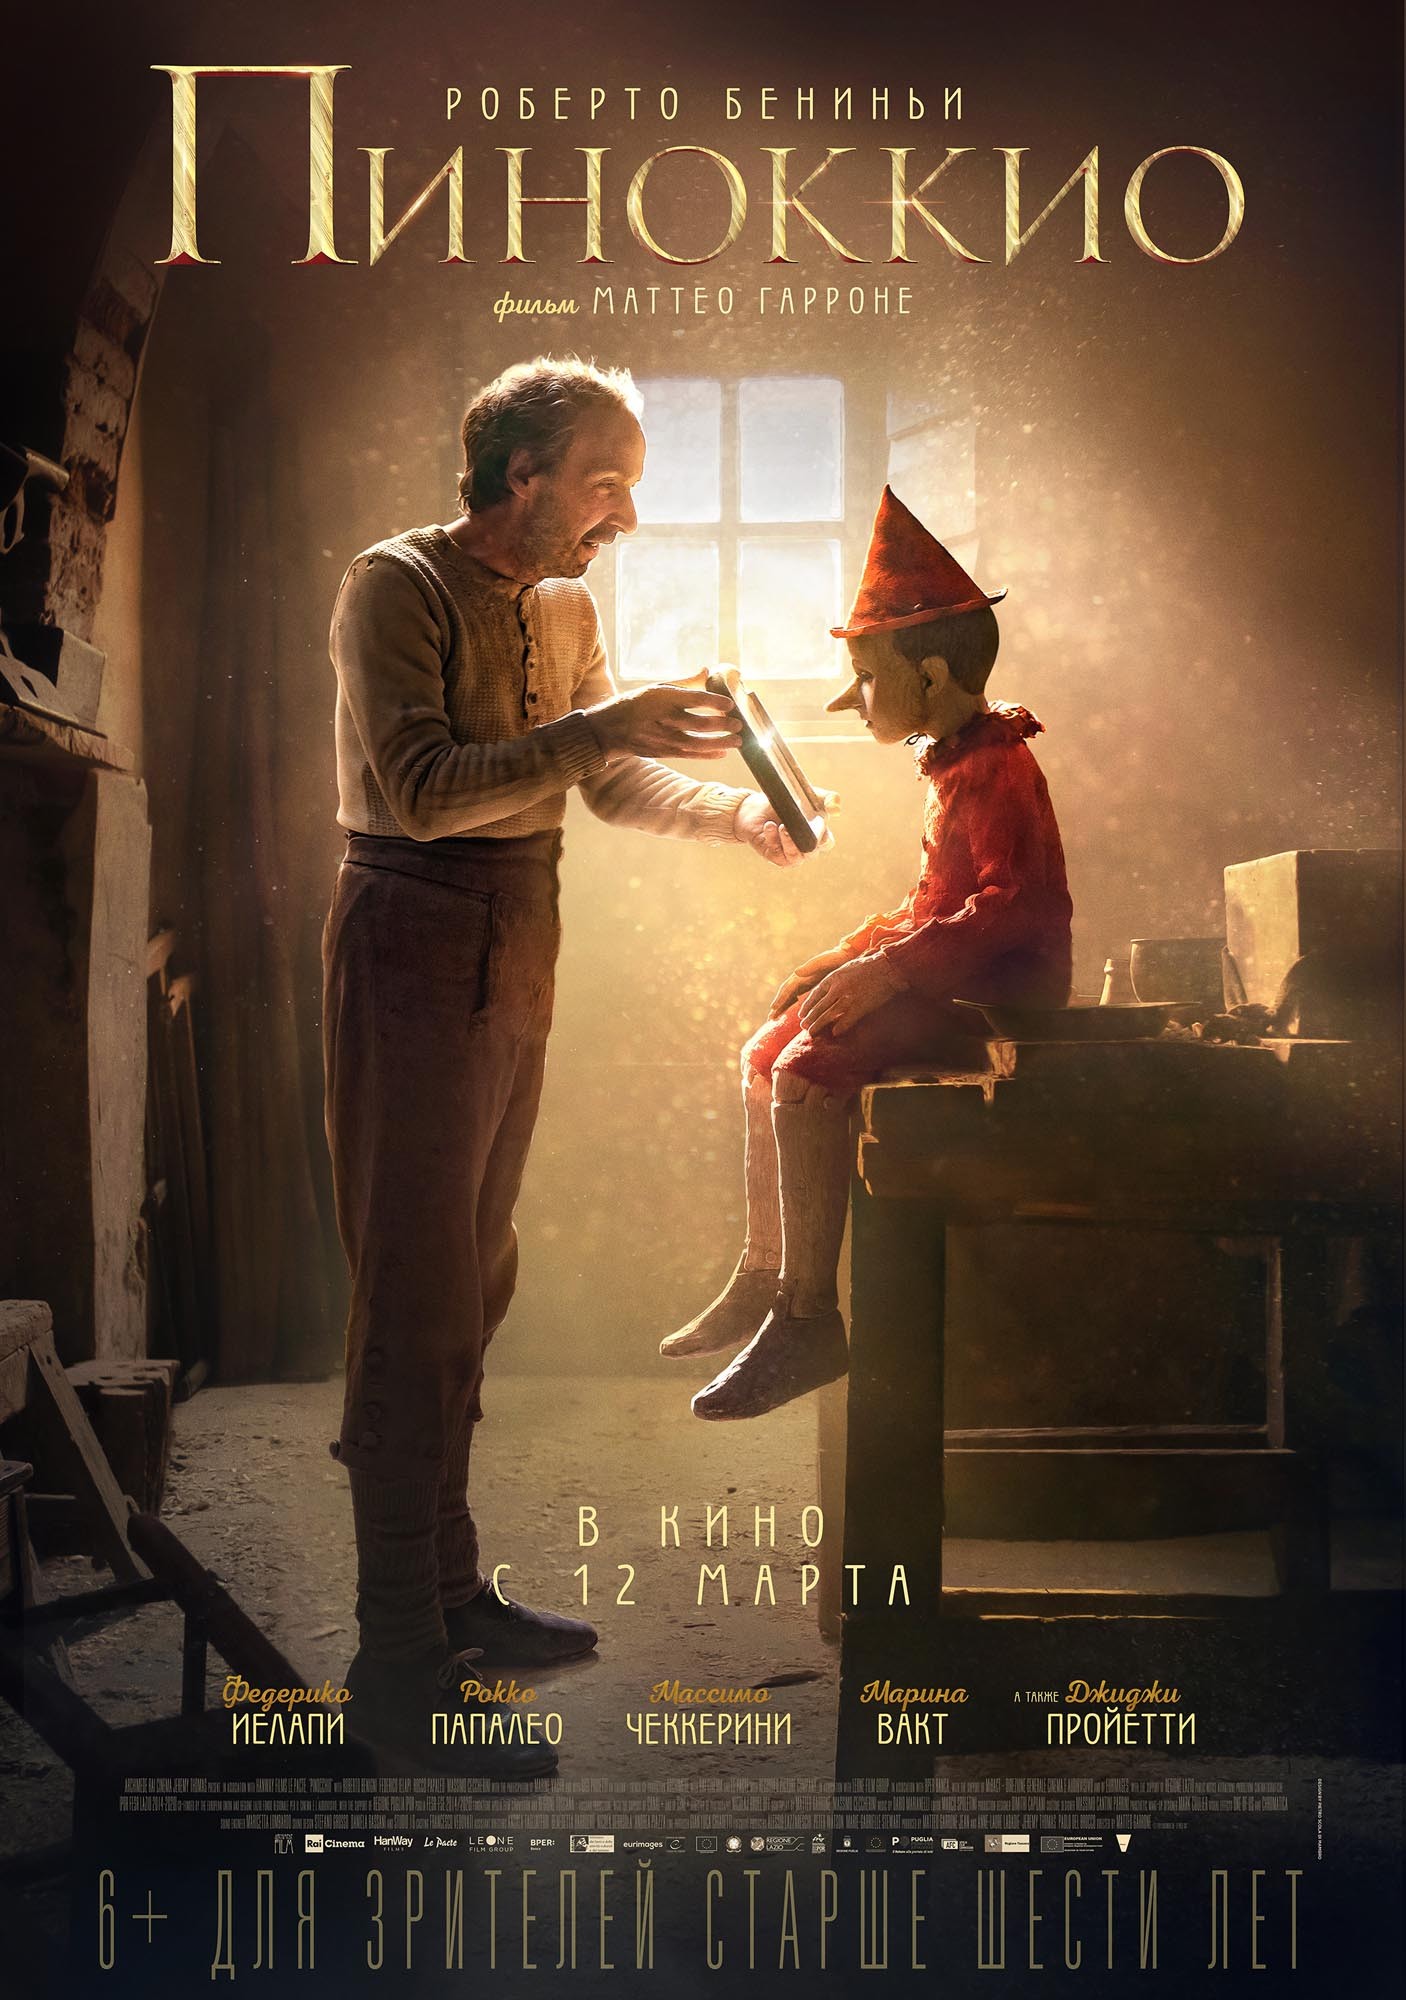 Пиноккио: постер N166871